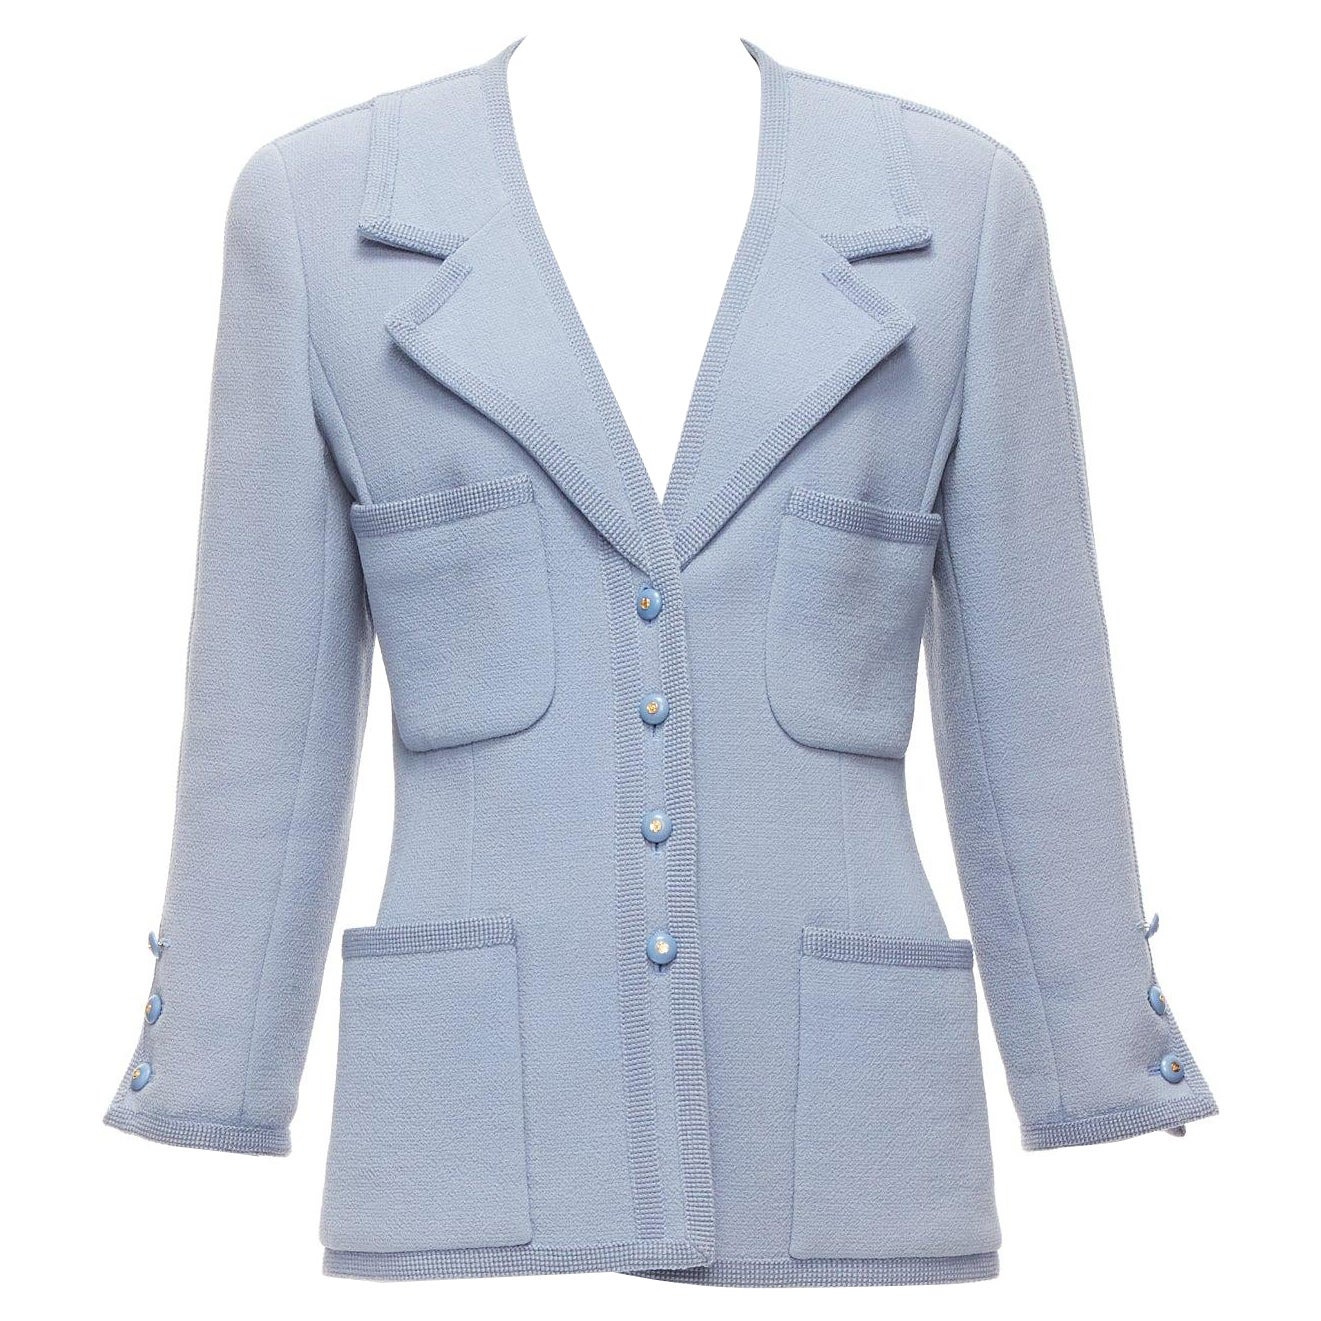 CHANEL 1997 Vintage powder blue 100% wool 4 pocket CC logo jacket FR38 M